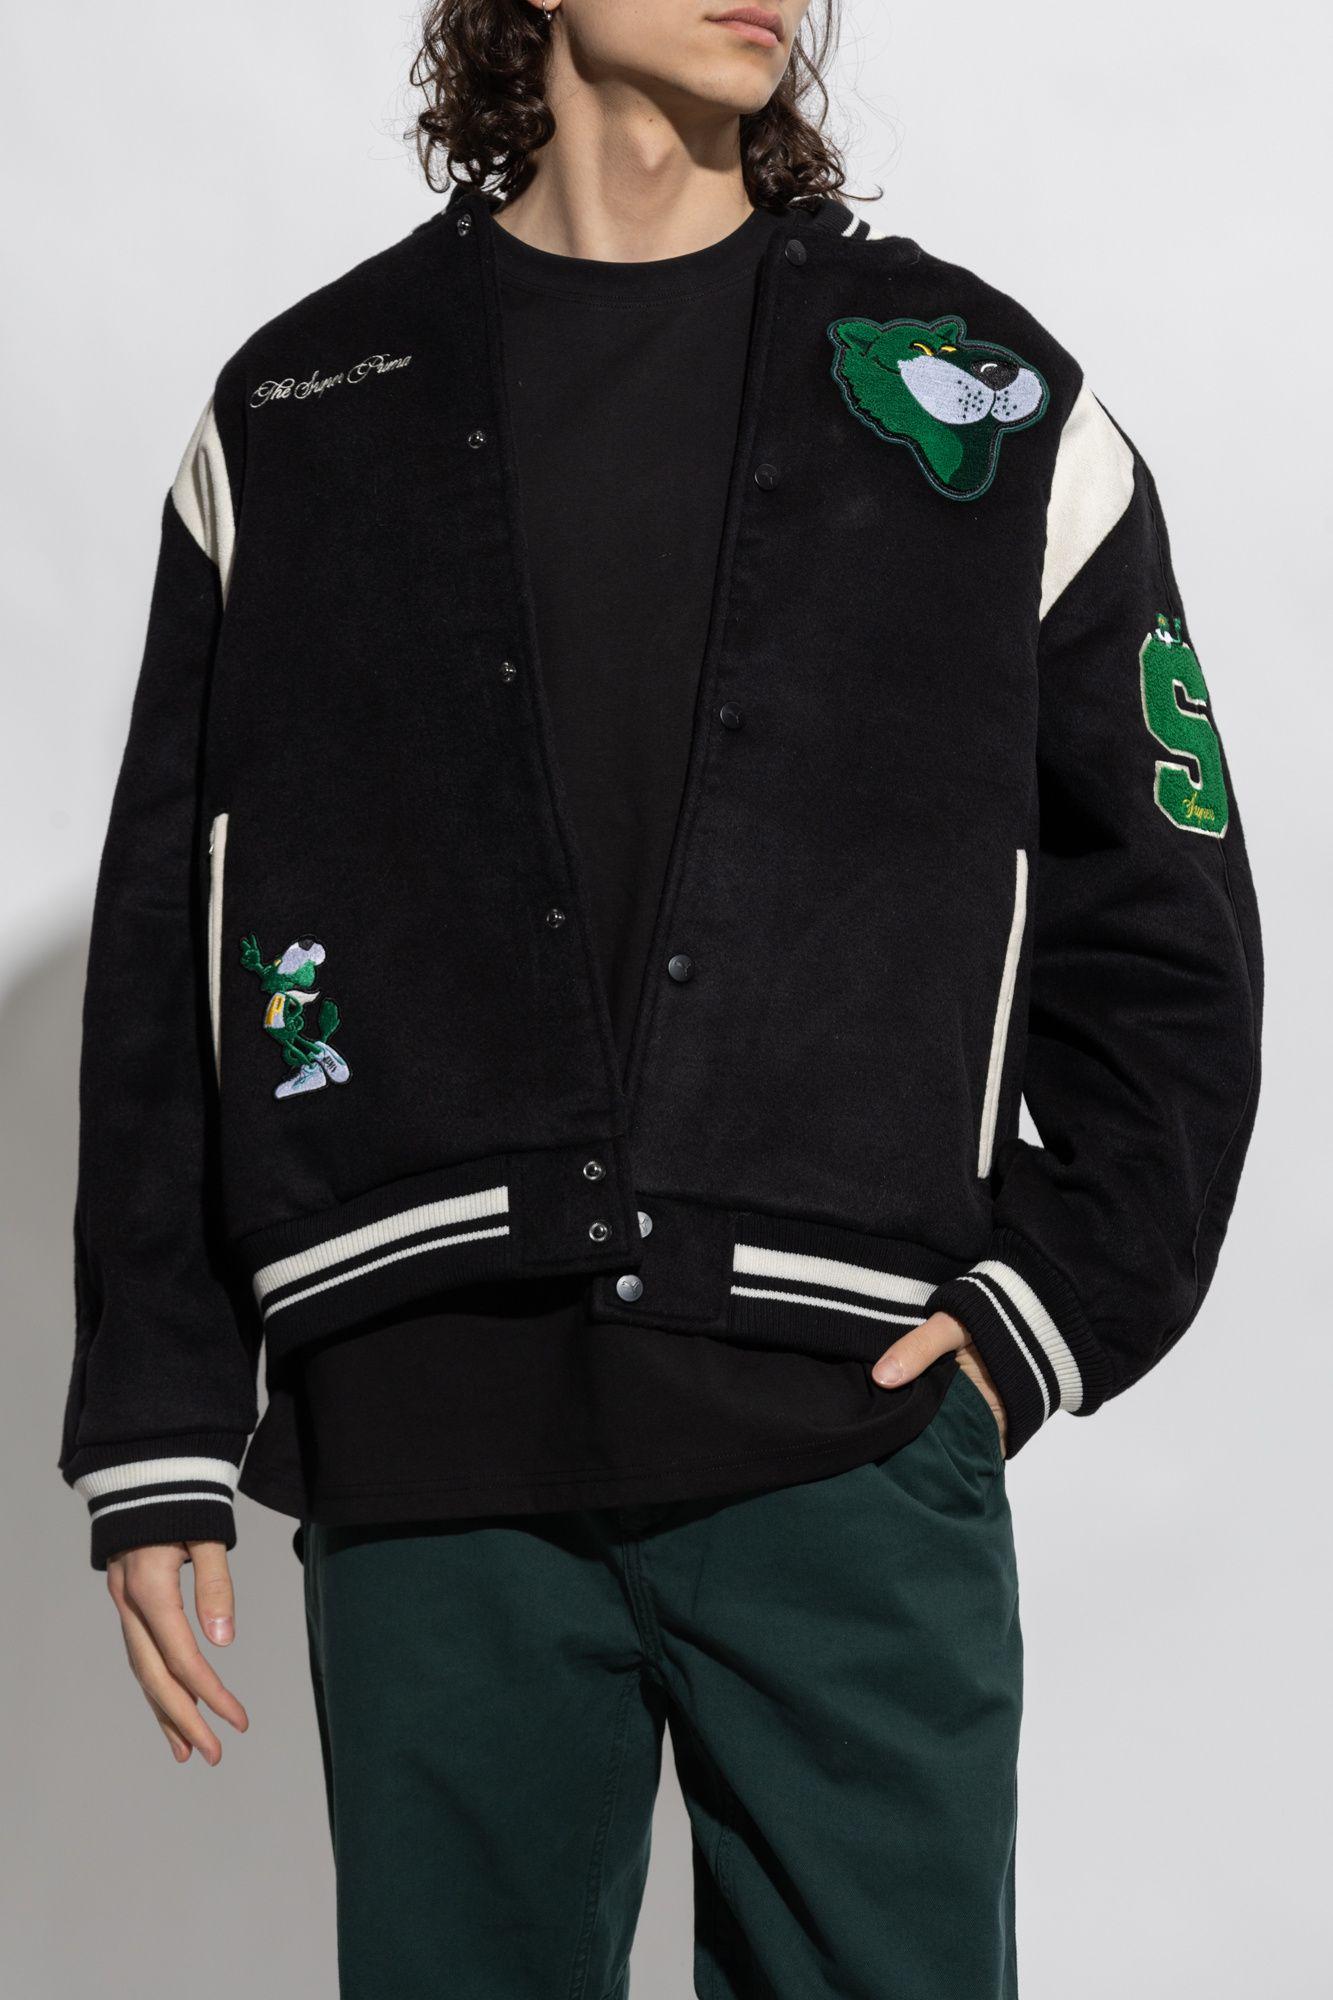 PUMA THE MASCOT T7 College Jacket, Emerald green Men's Bomber